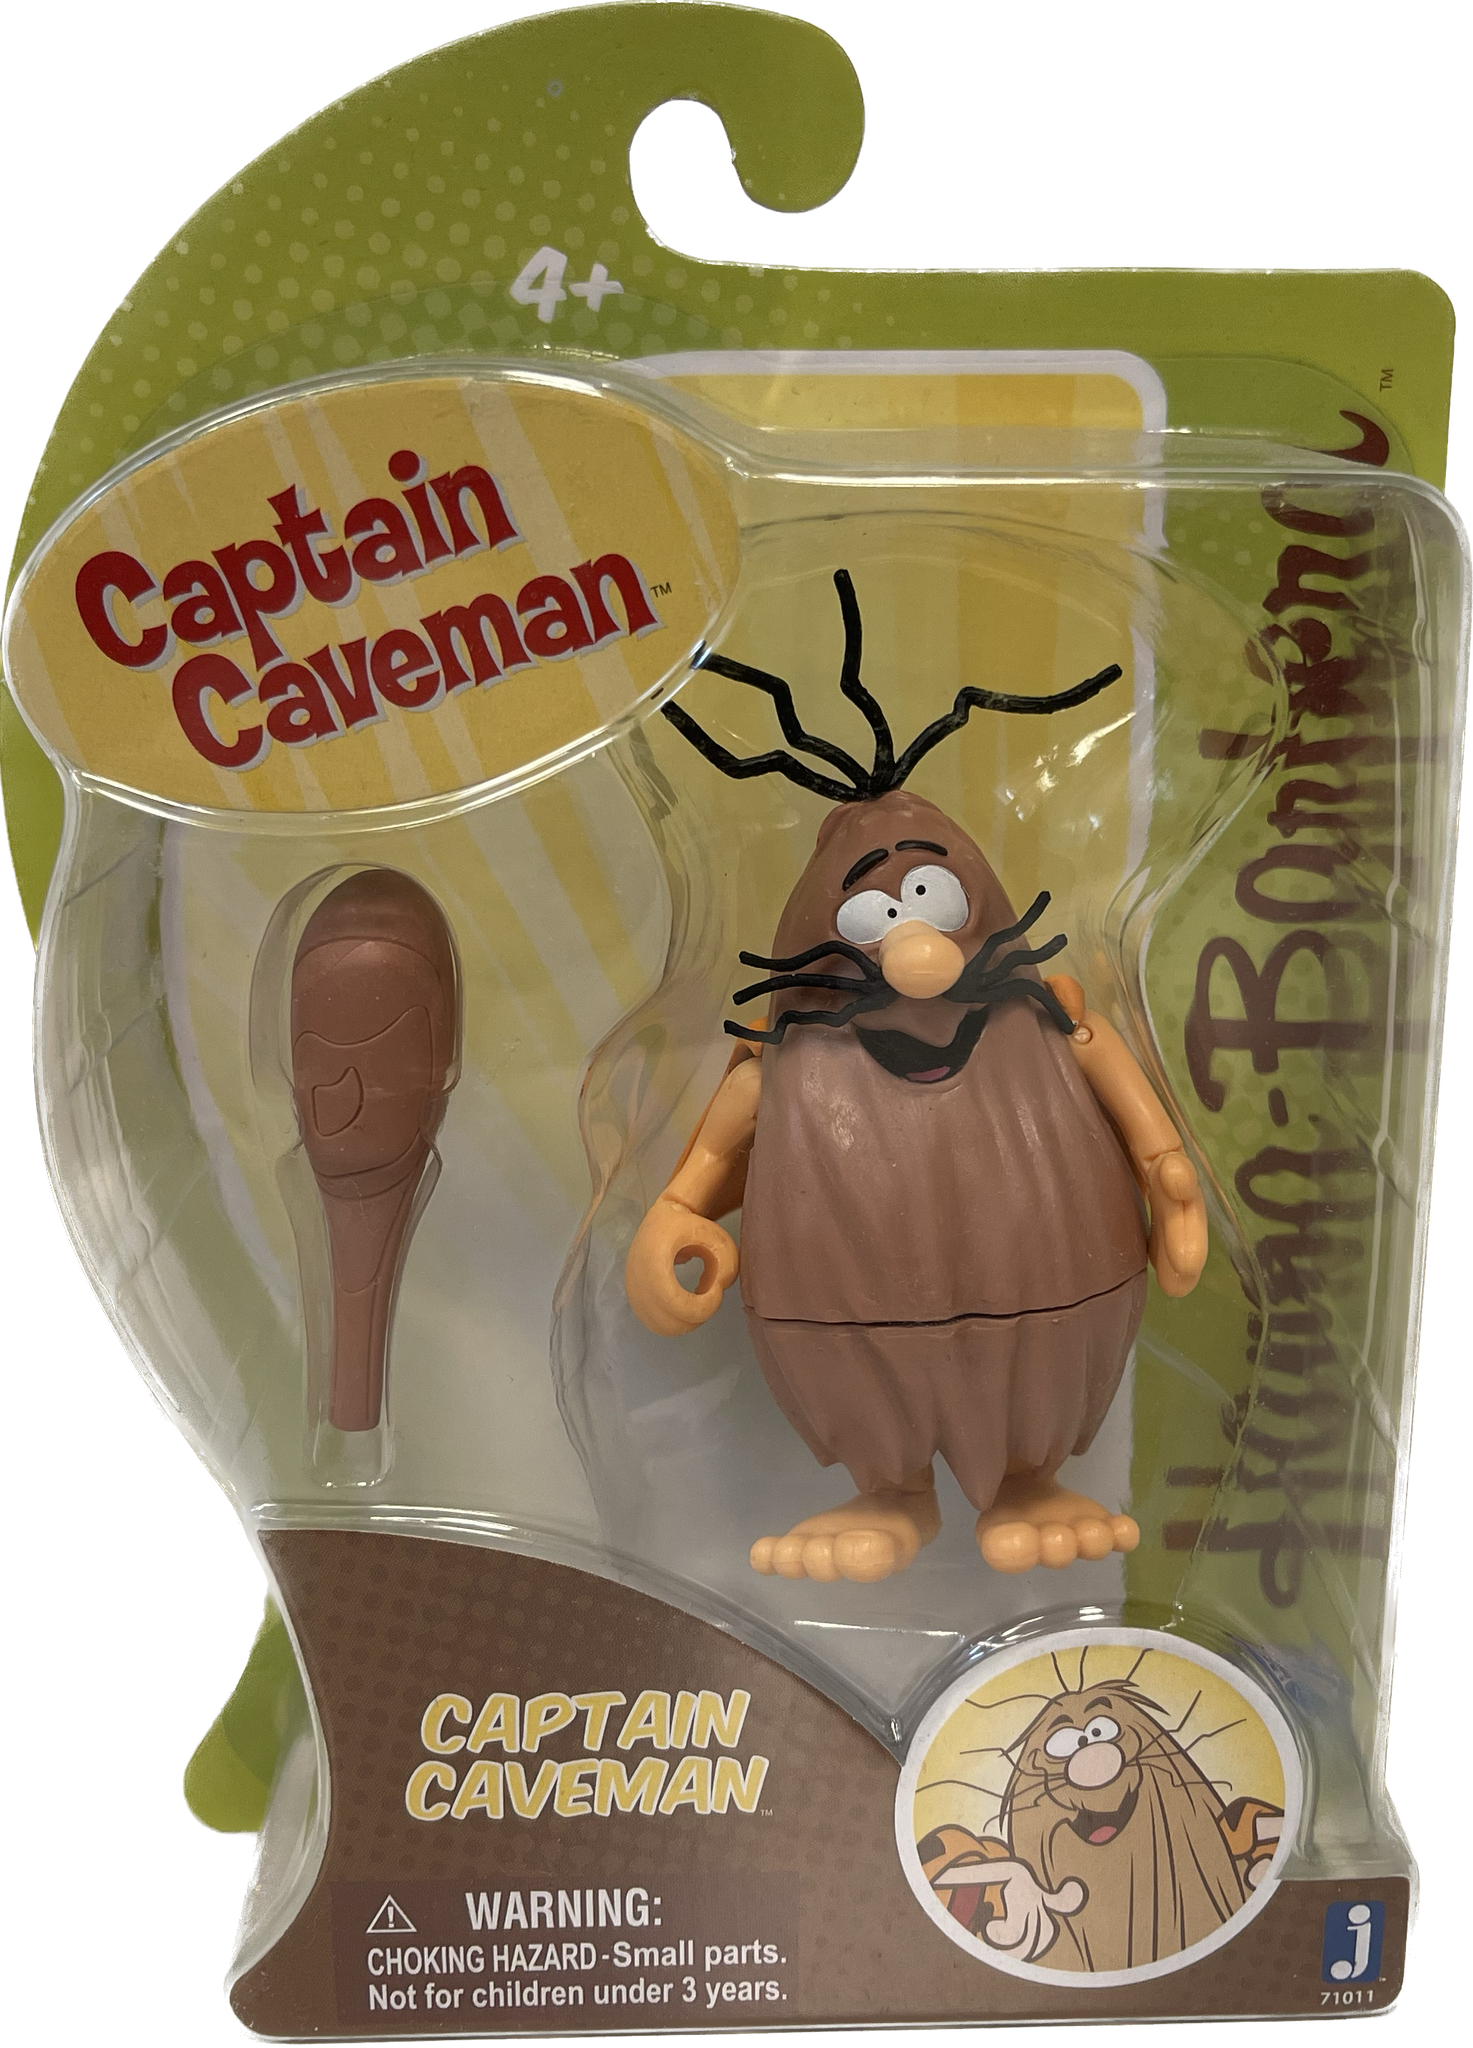 Captain Caveman Figure NOT MINT